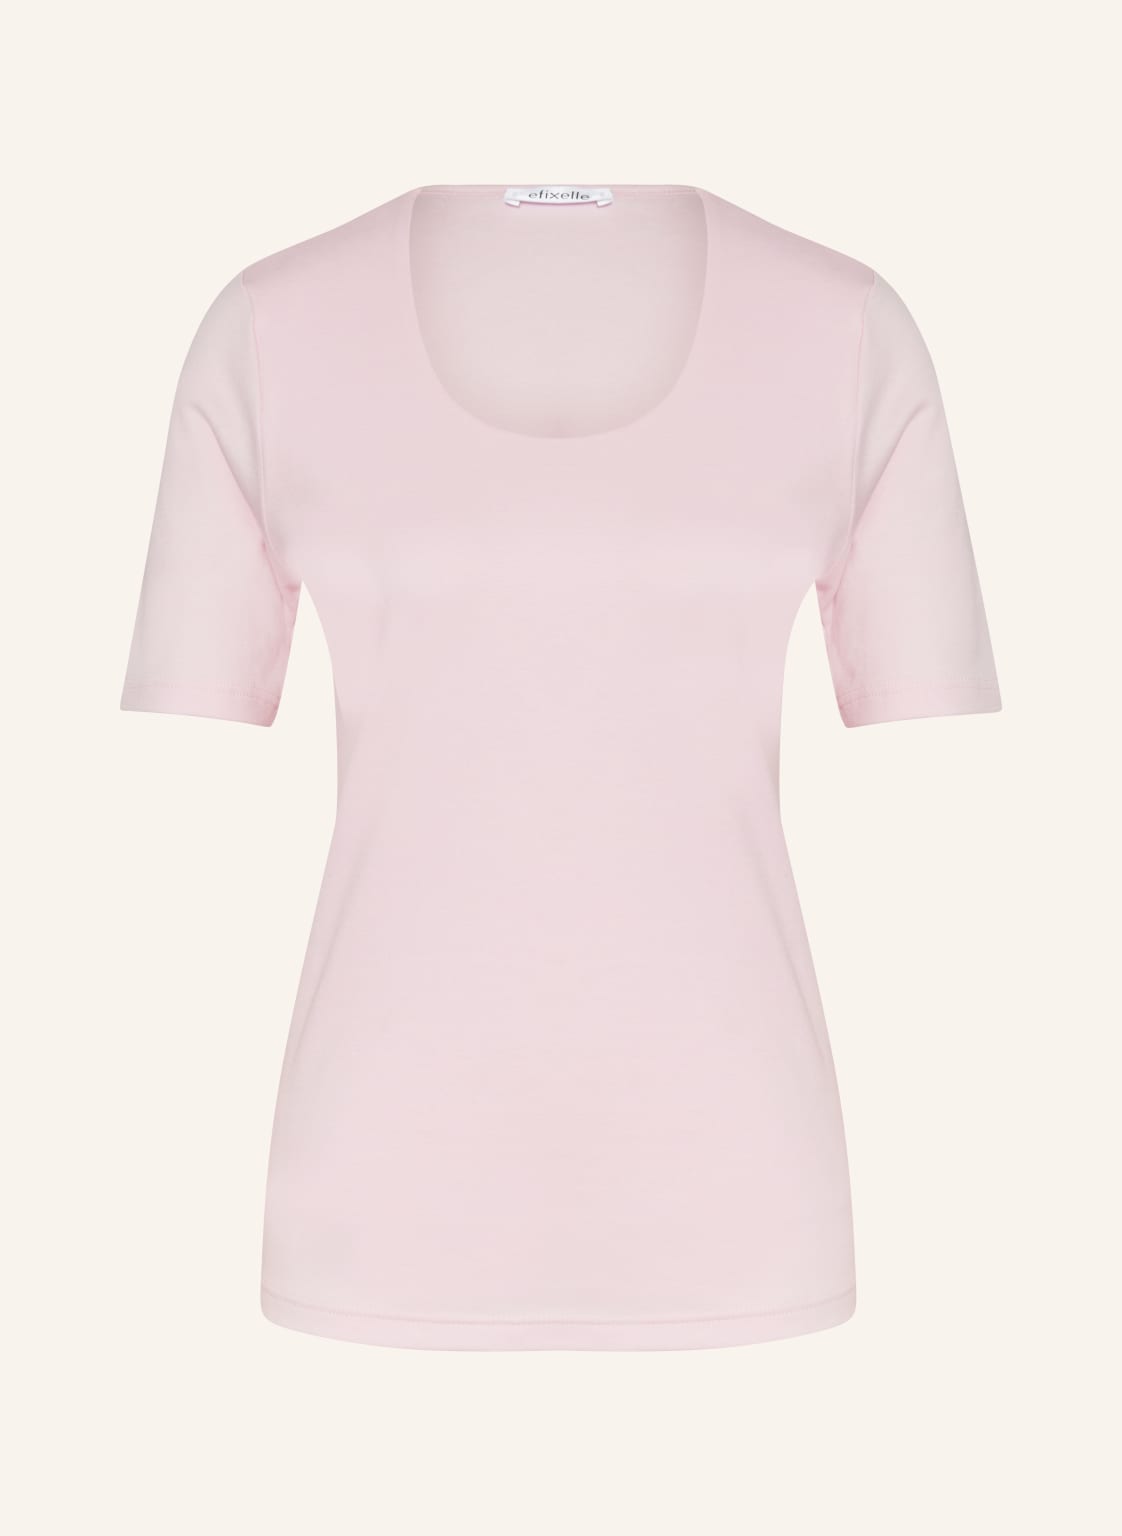 Efixelle T-Shirt rosa